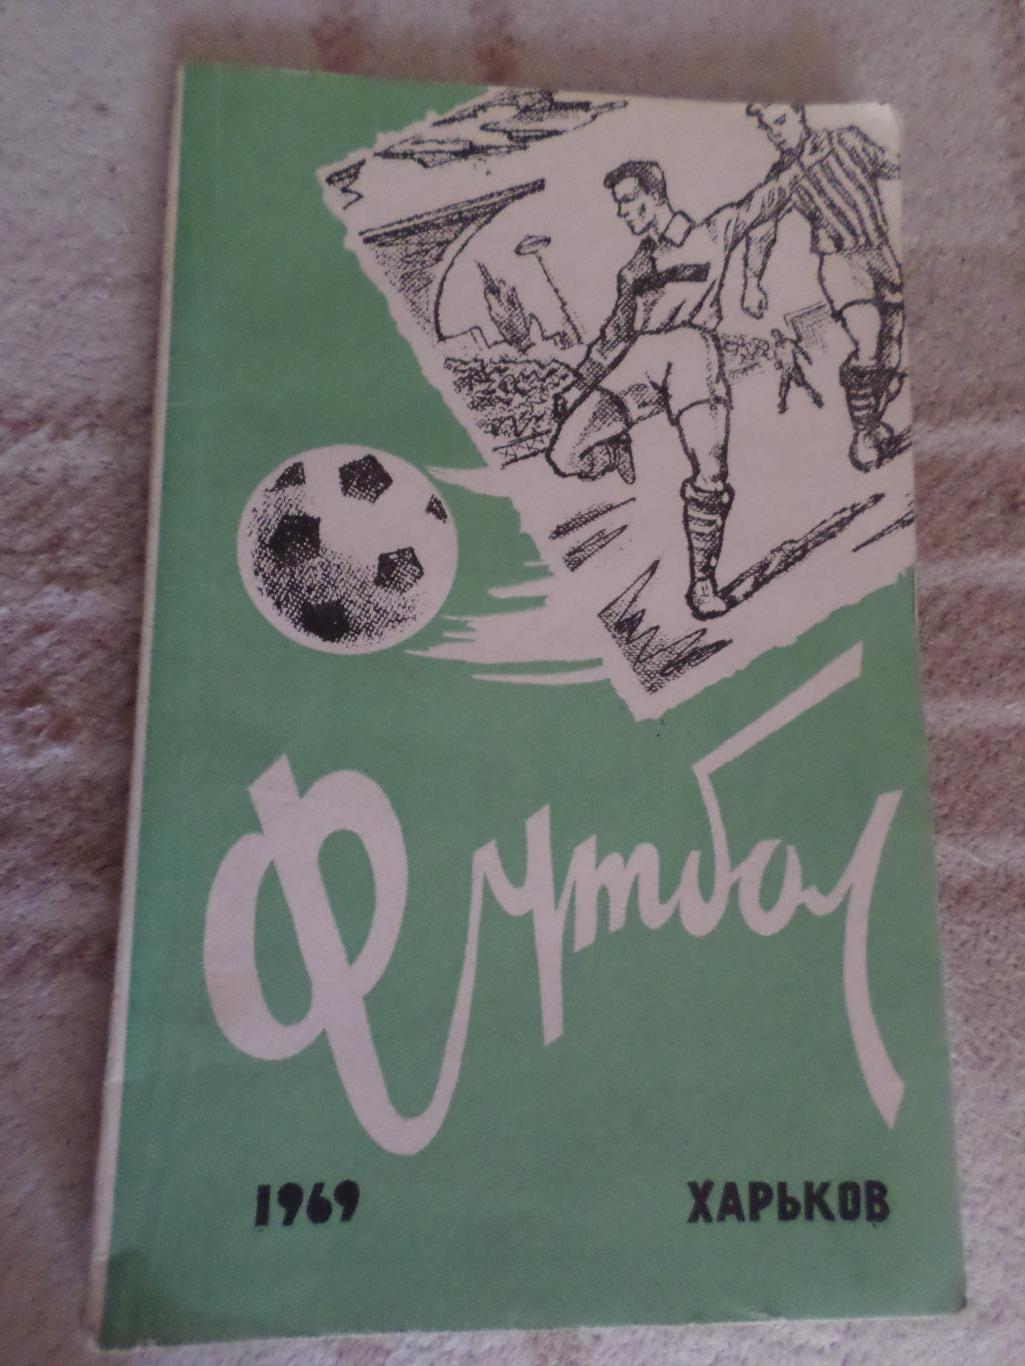 справочник Футбол 1969 г, г. Харьков